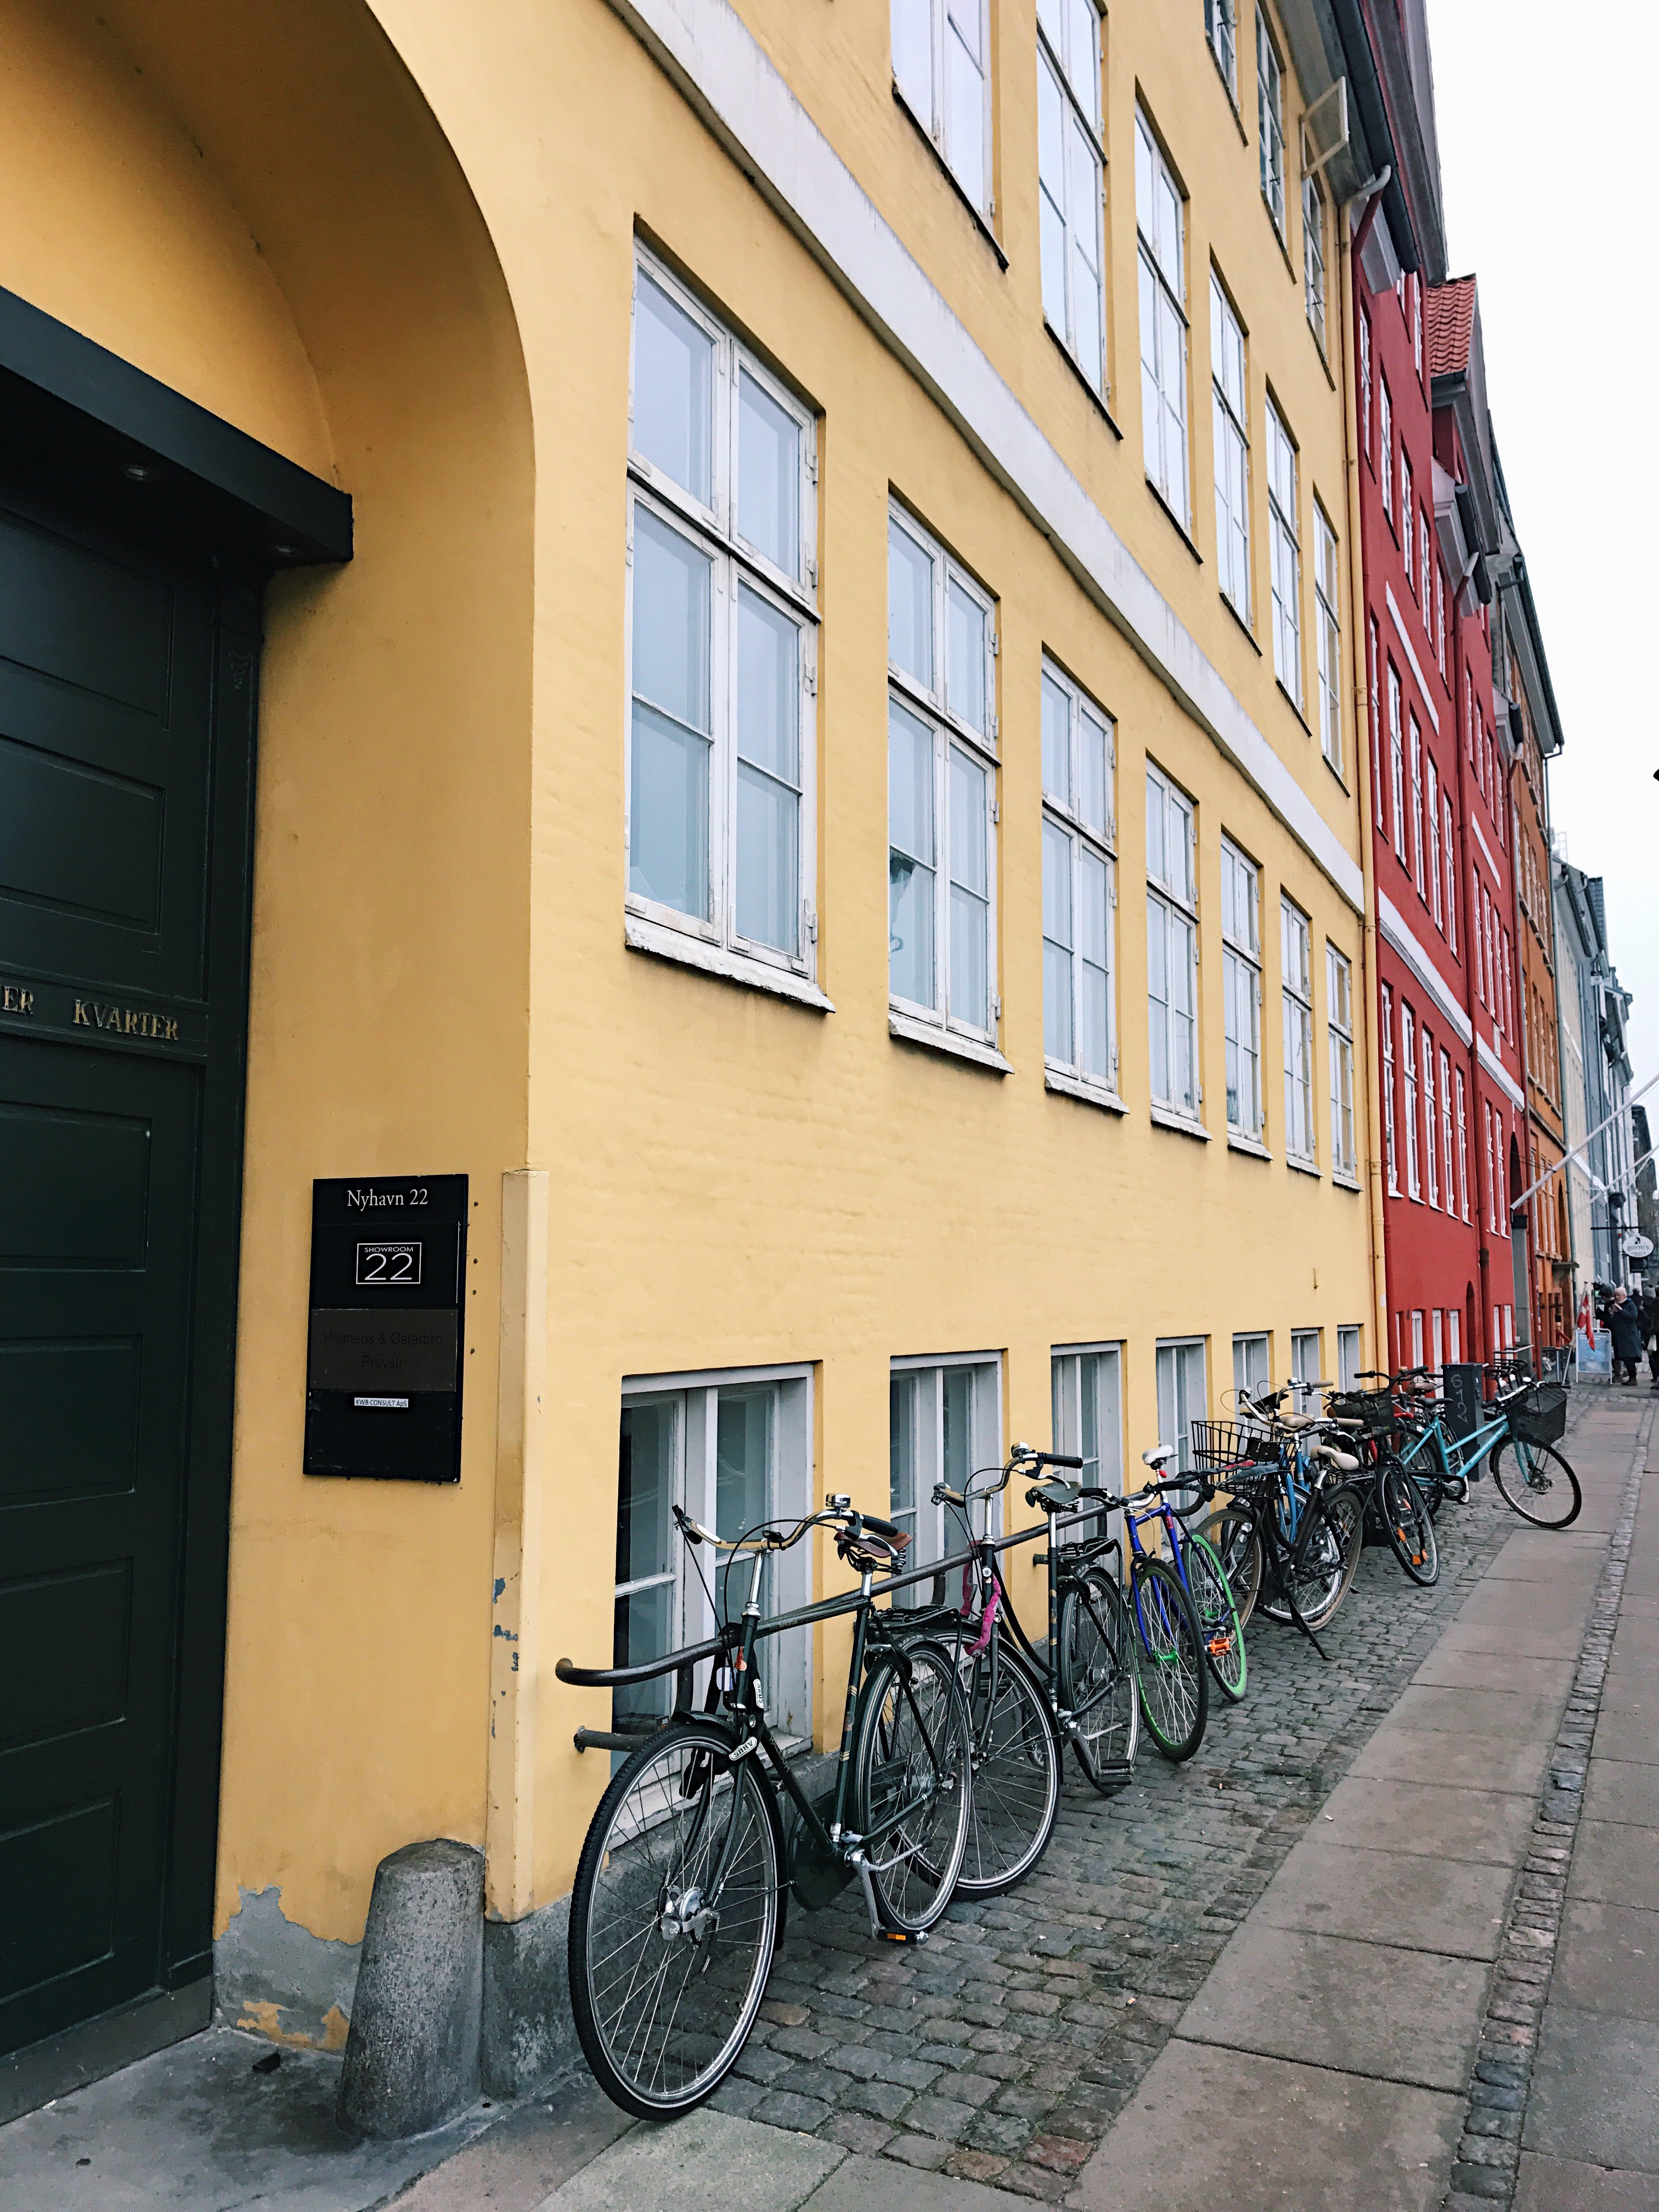 48 Hours in Copenhagen.